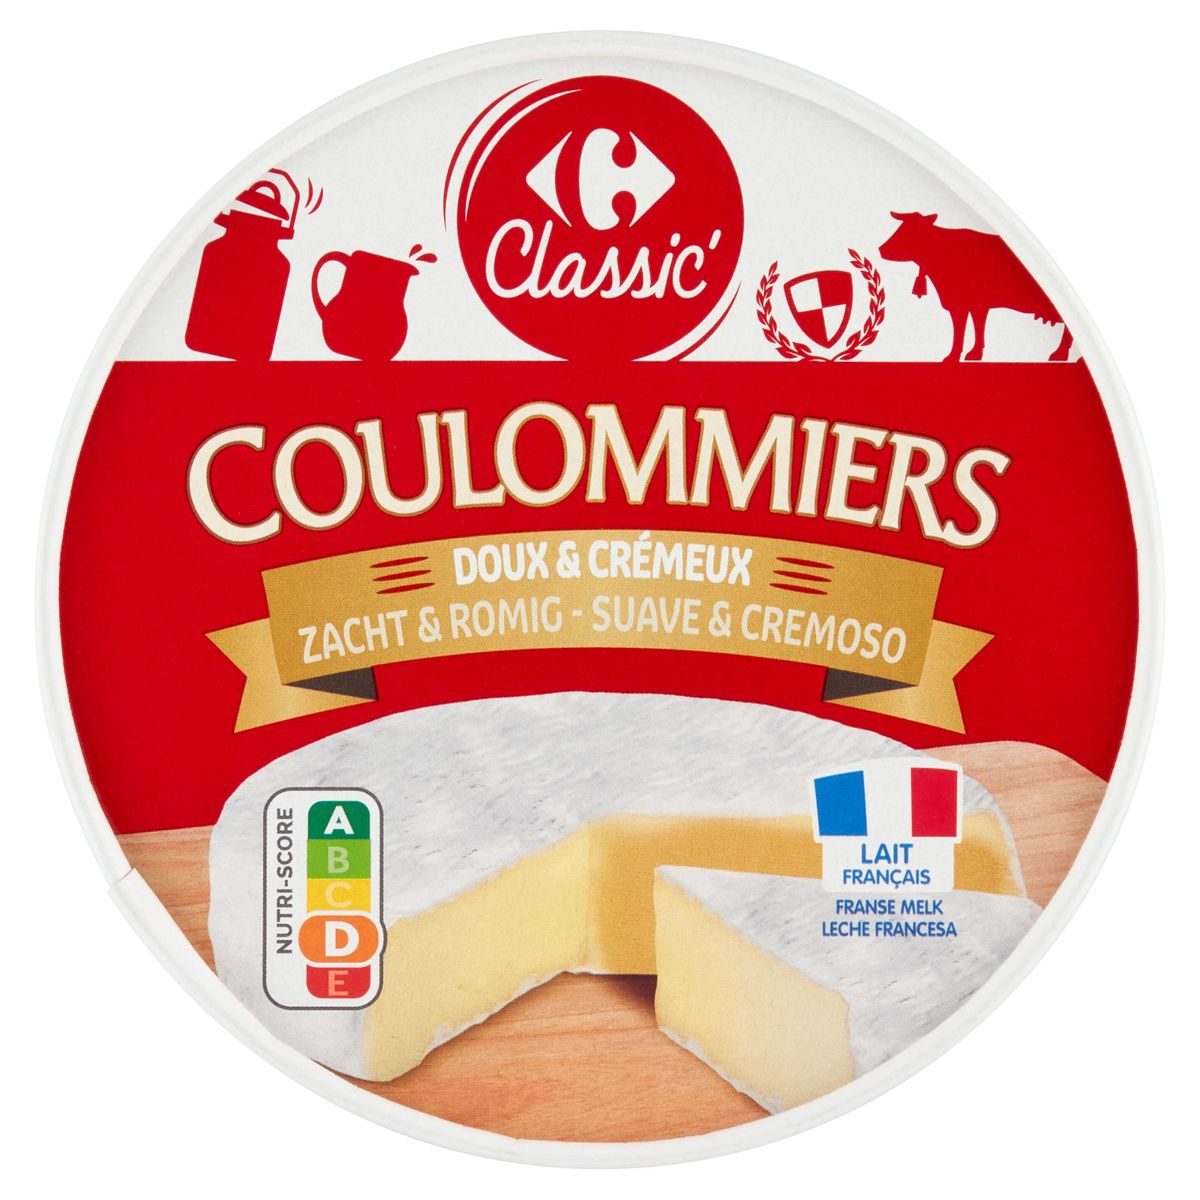 Carrefour Classic' Coulommiers Doux & Crémeux 350 g